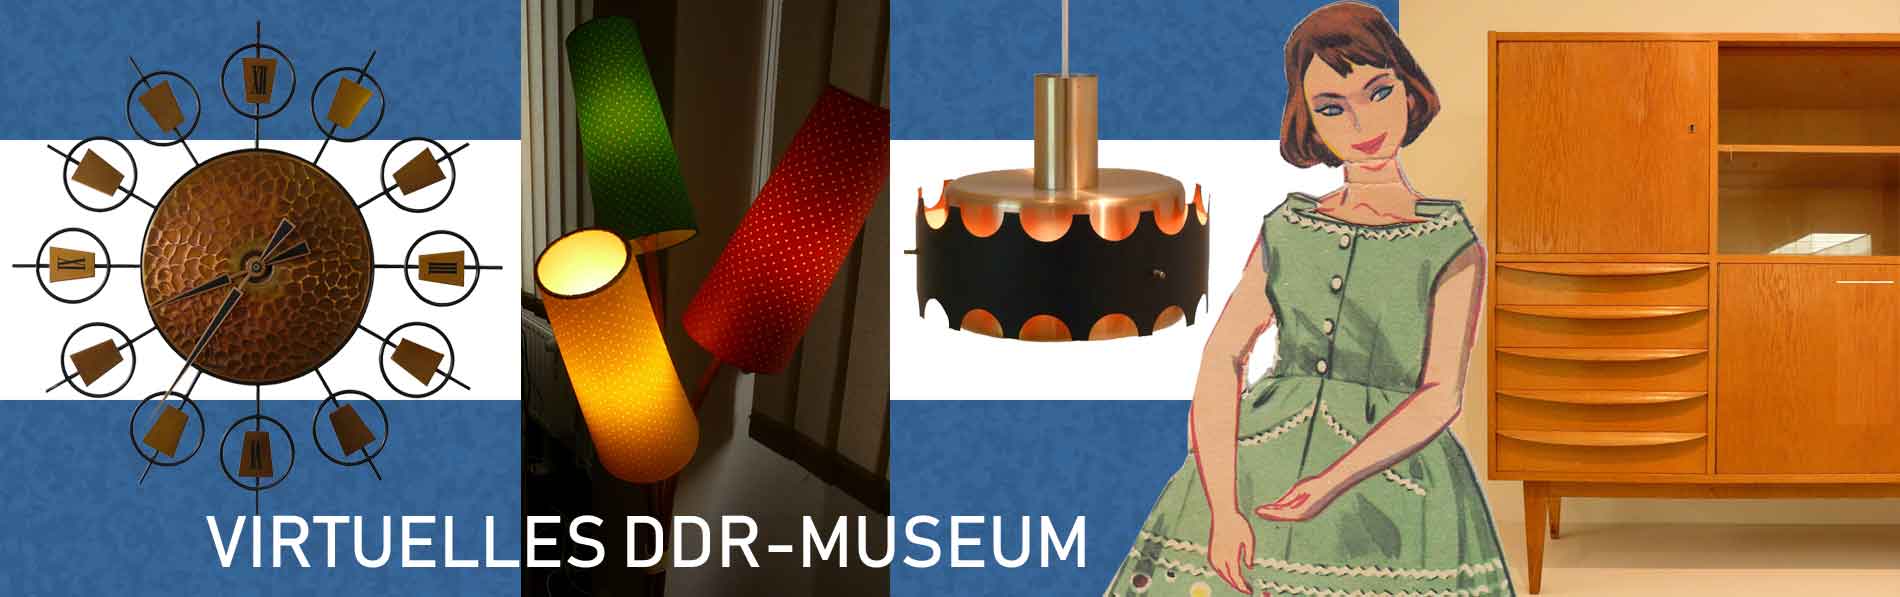 Virtuelles DDR-Museum für DDR-Spielzeug, DDR-Mode, Wohnkultur, Alltag....